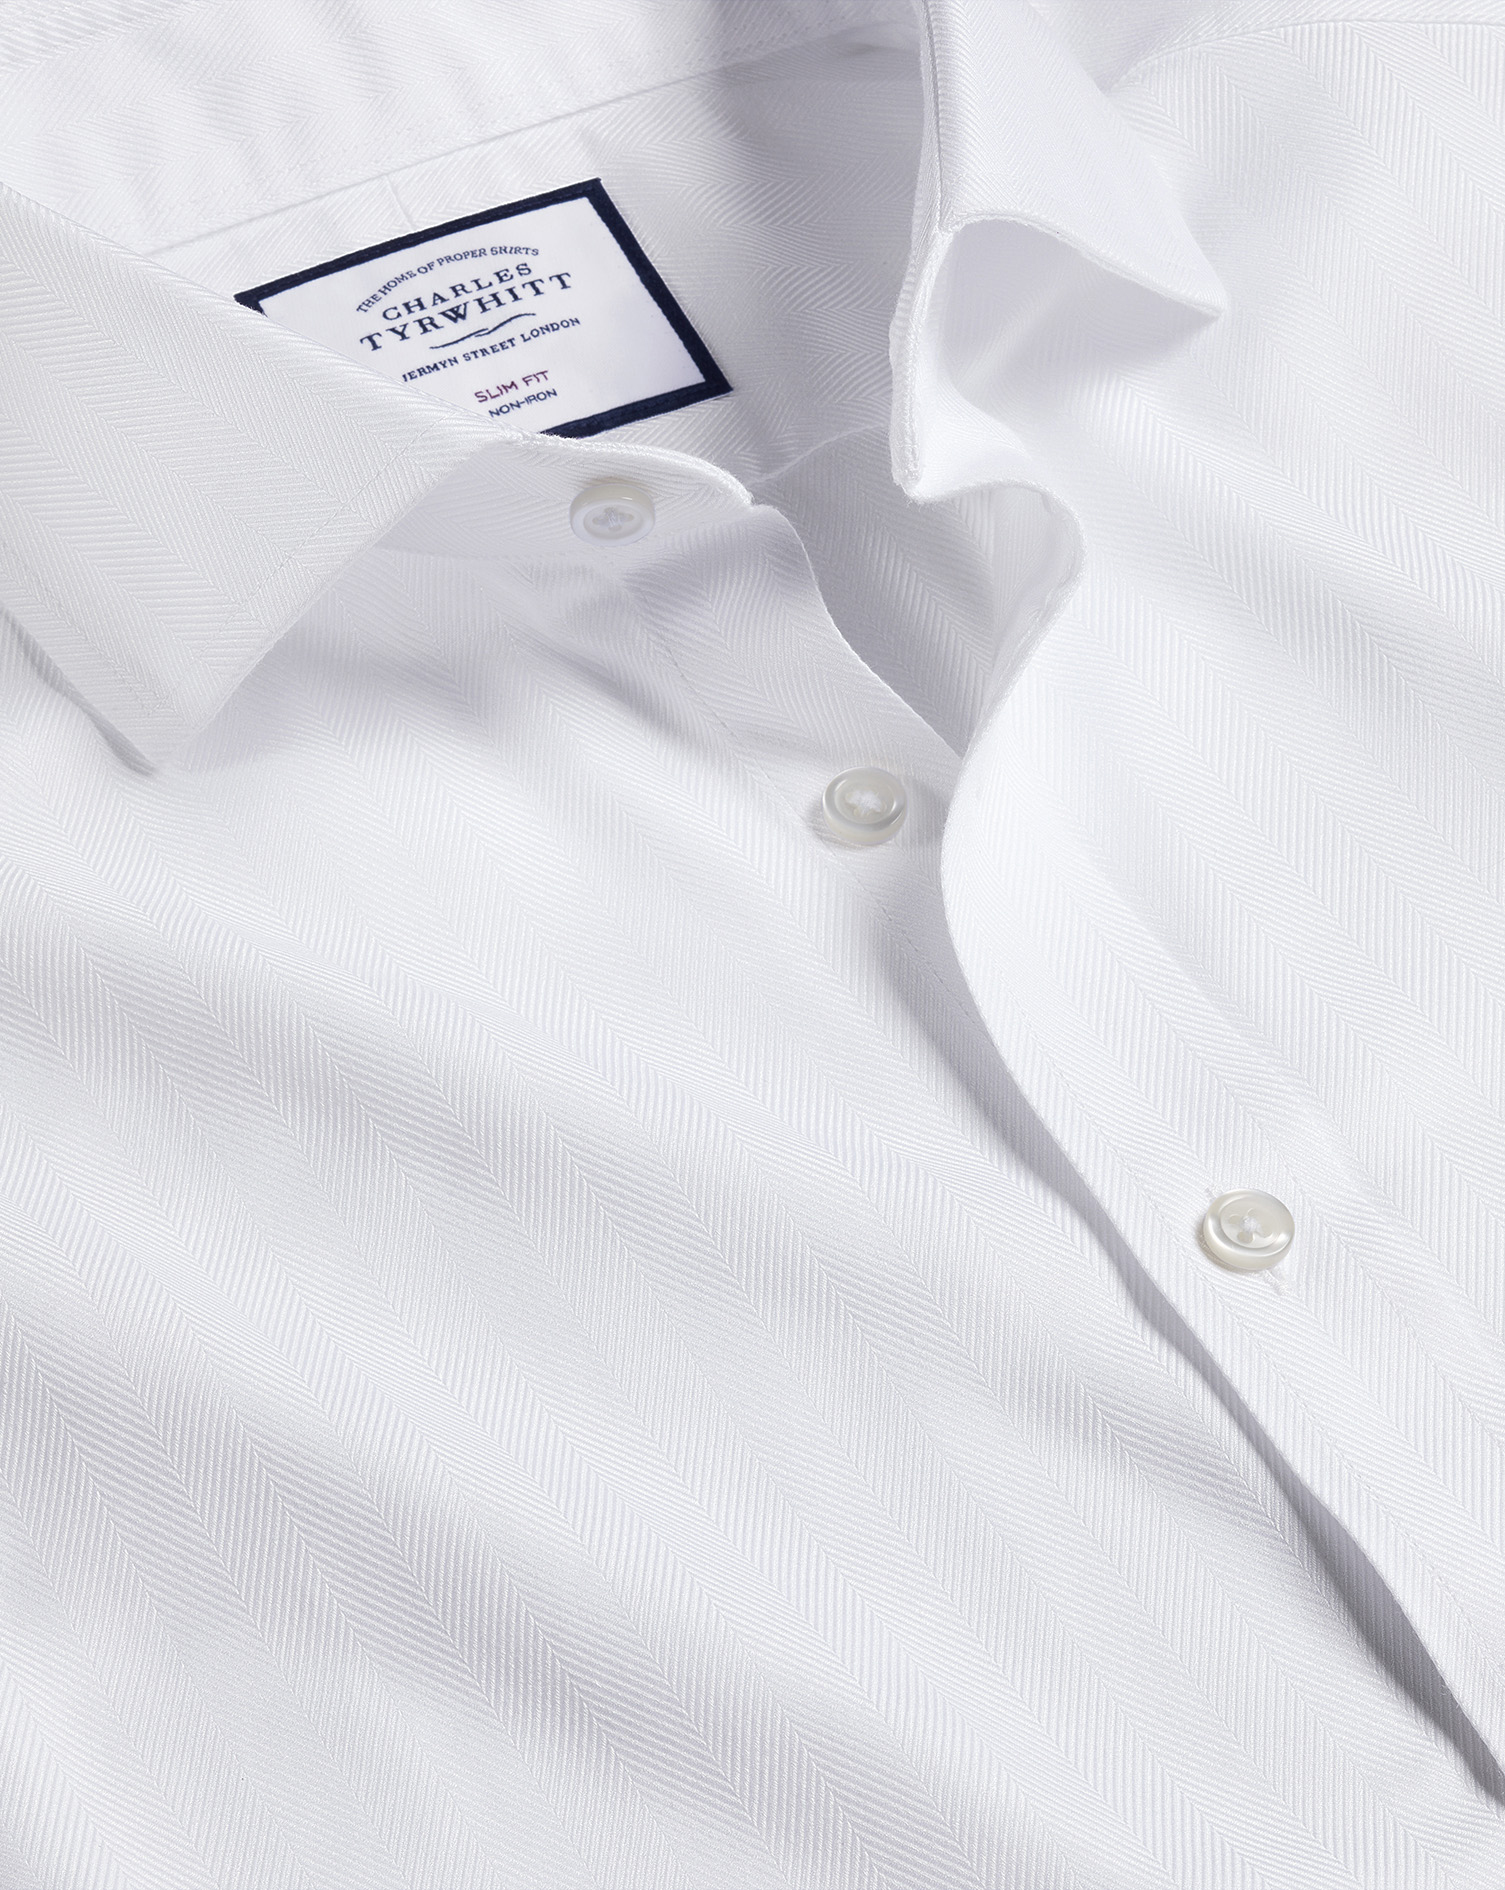 Men's Charles Tyrwhitt Cutaway Collar Non-Iron Herringbone Dress Shirt - White Single Cuff Size XXL 